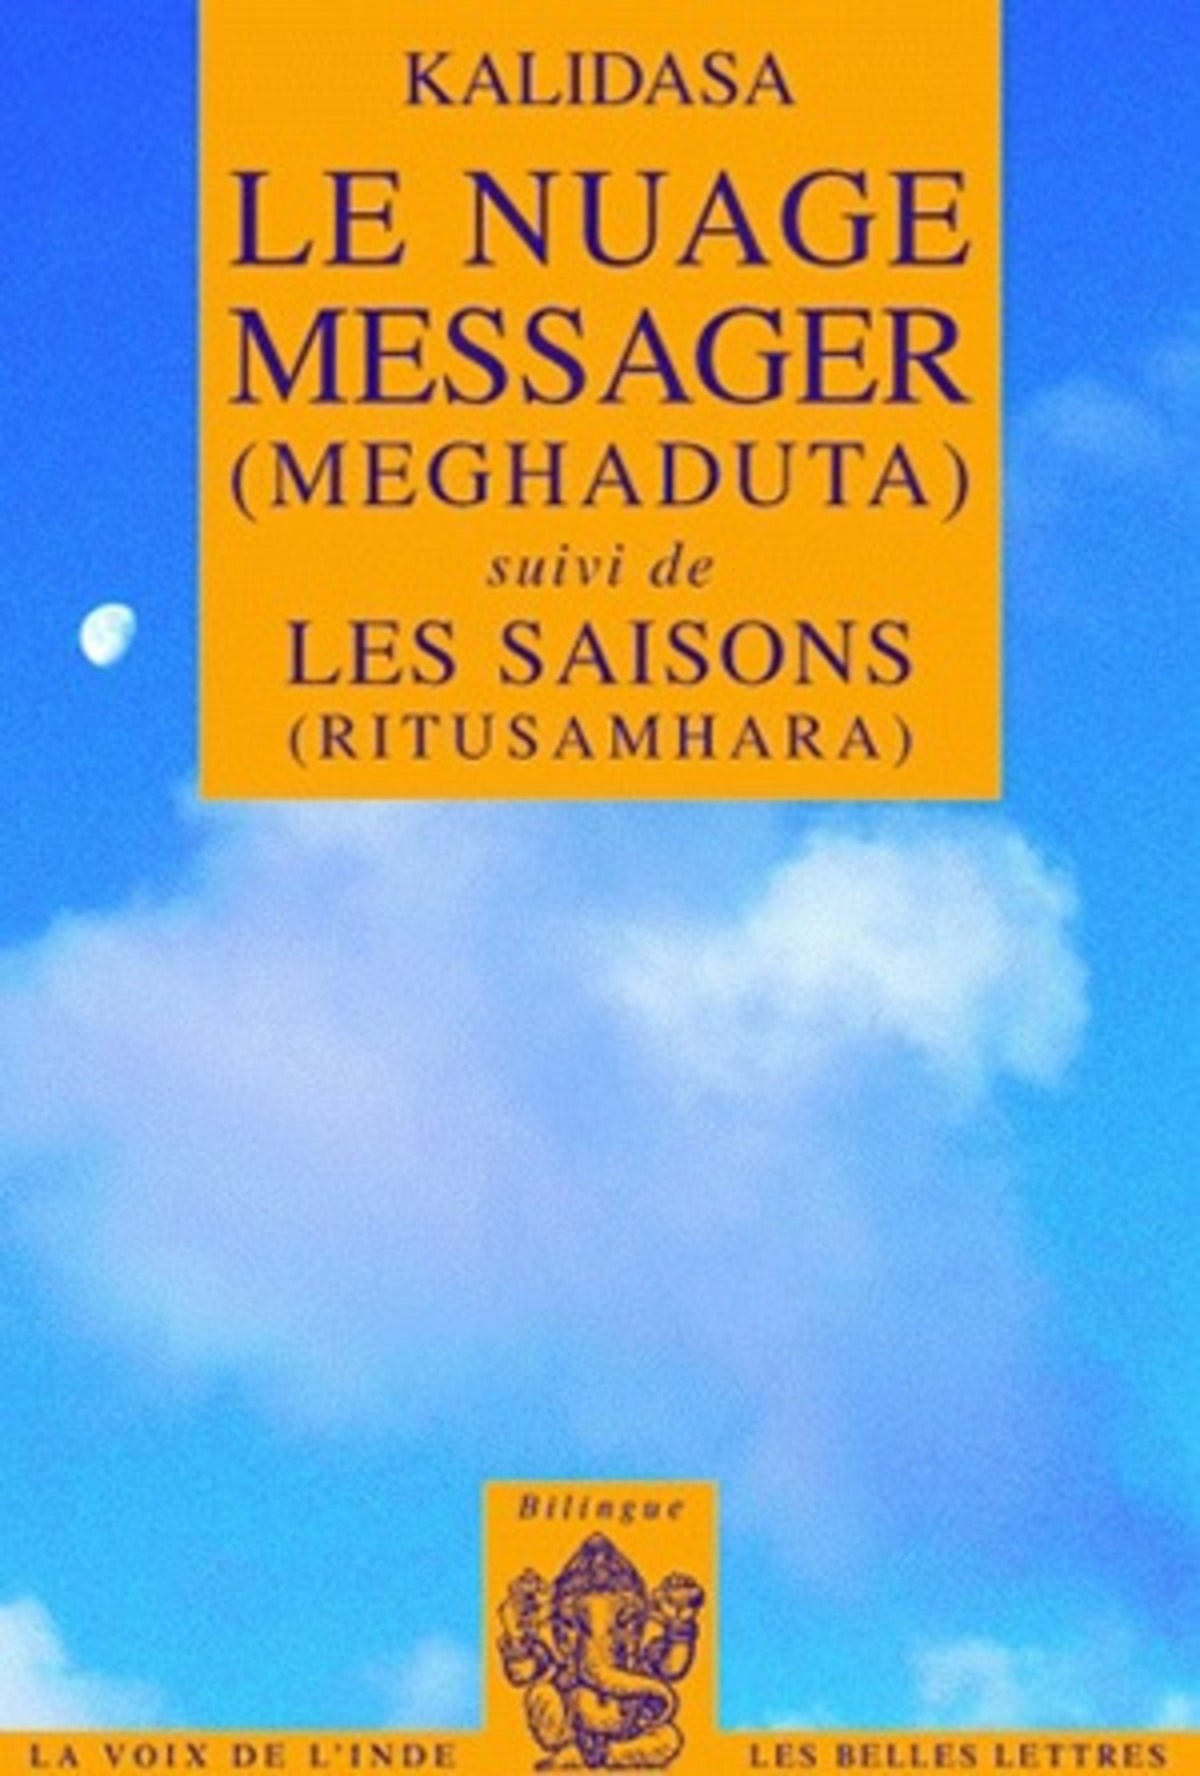 Le Nuage messager (Meghaduta)